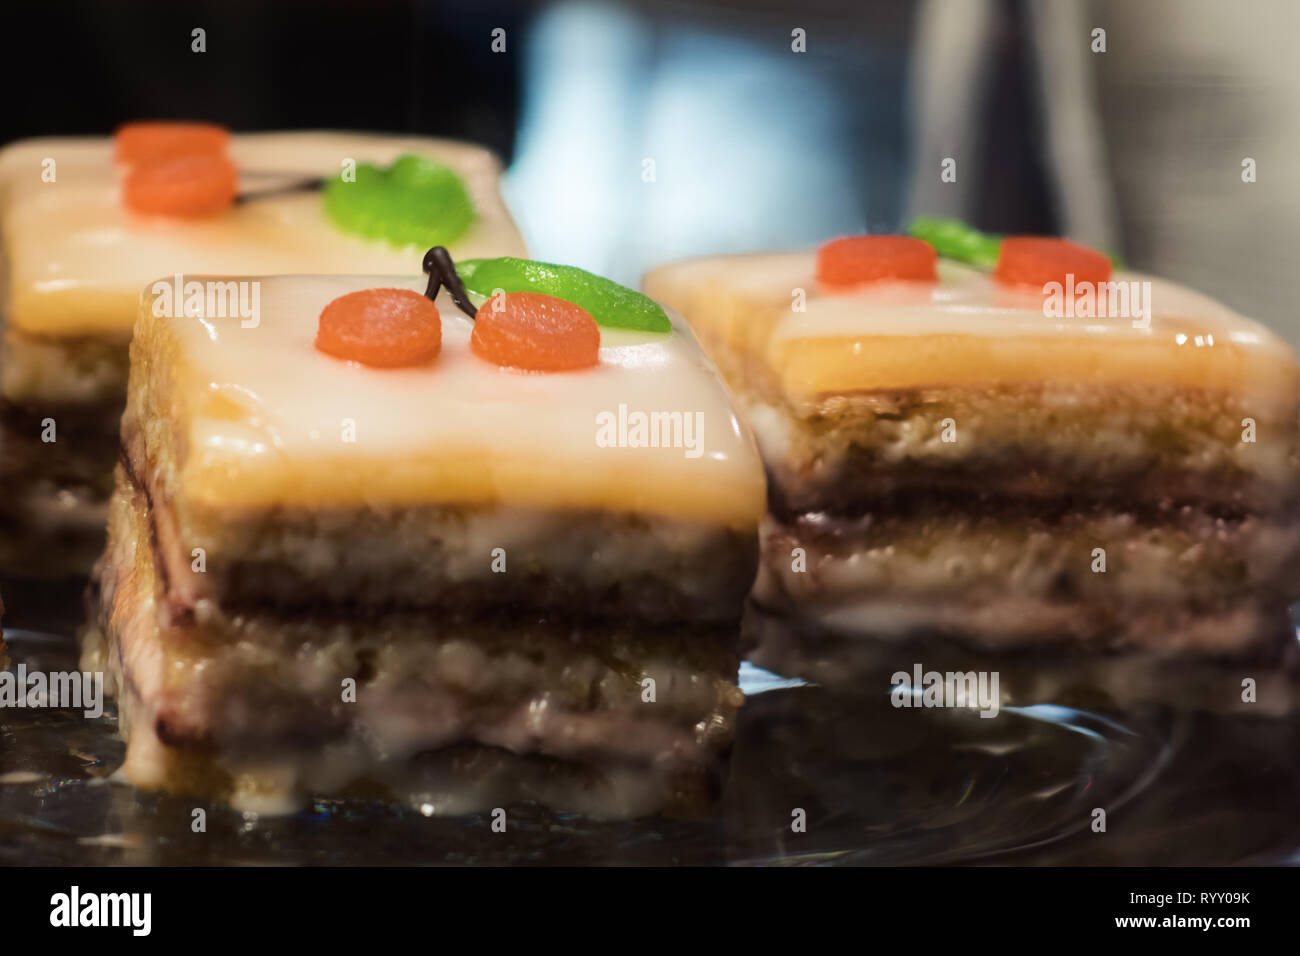 Süße Nachspeise mit Kirschen Dekoration - Kuchen, Kuchenstücke als Dessert Stock Photo